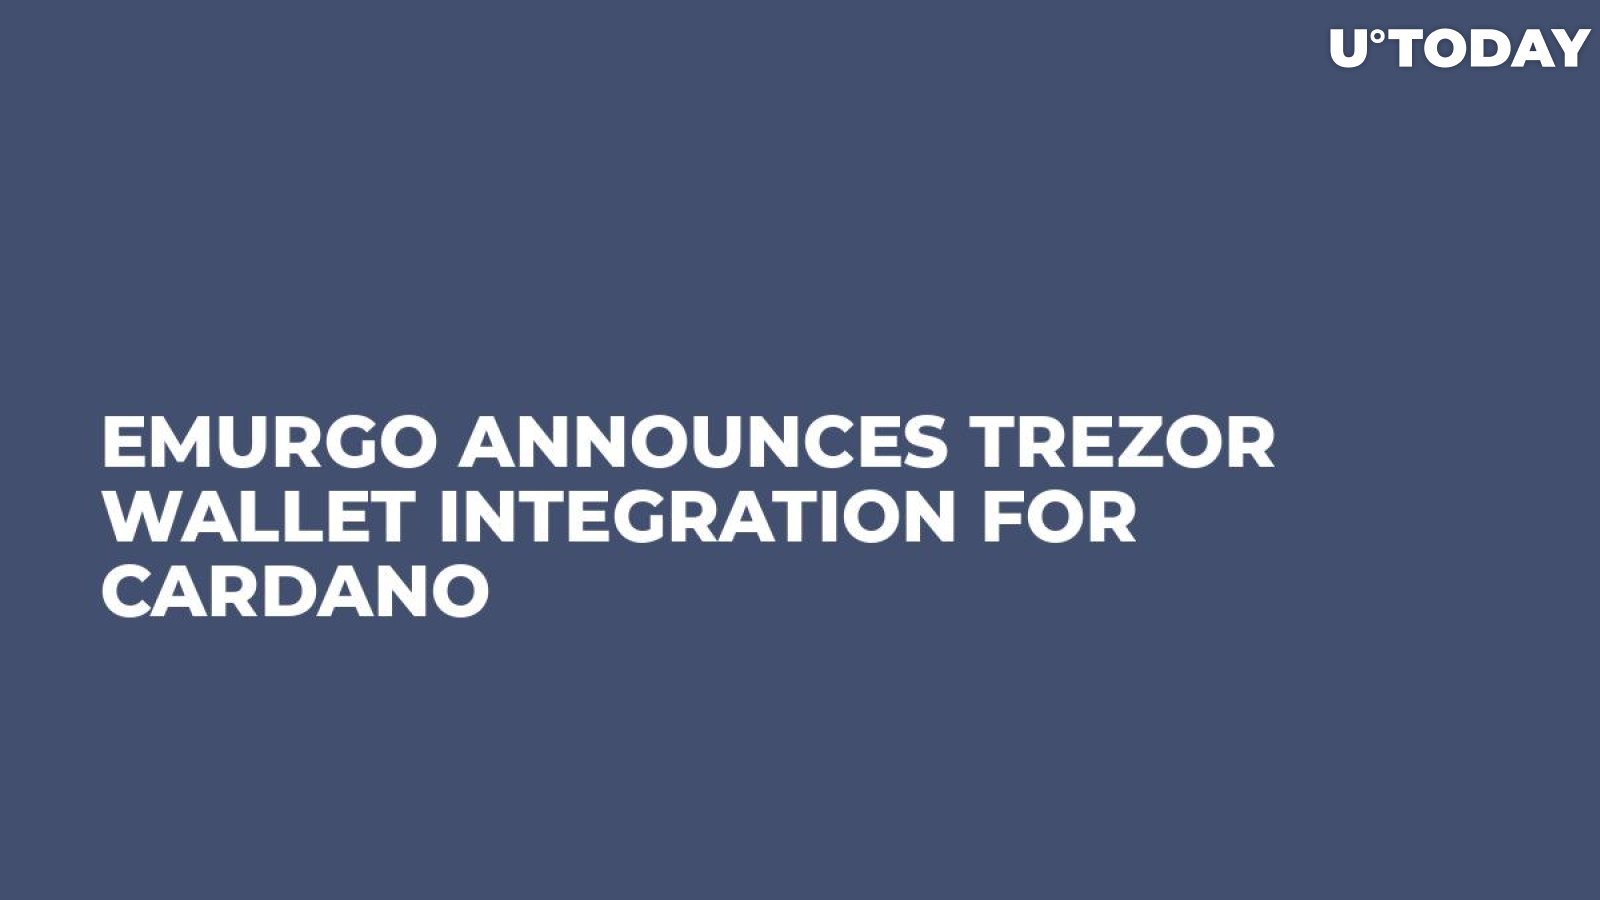 Emurgo Announces Trezor Wallet Integration for Cardano